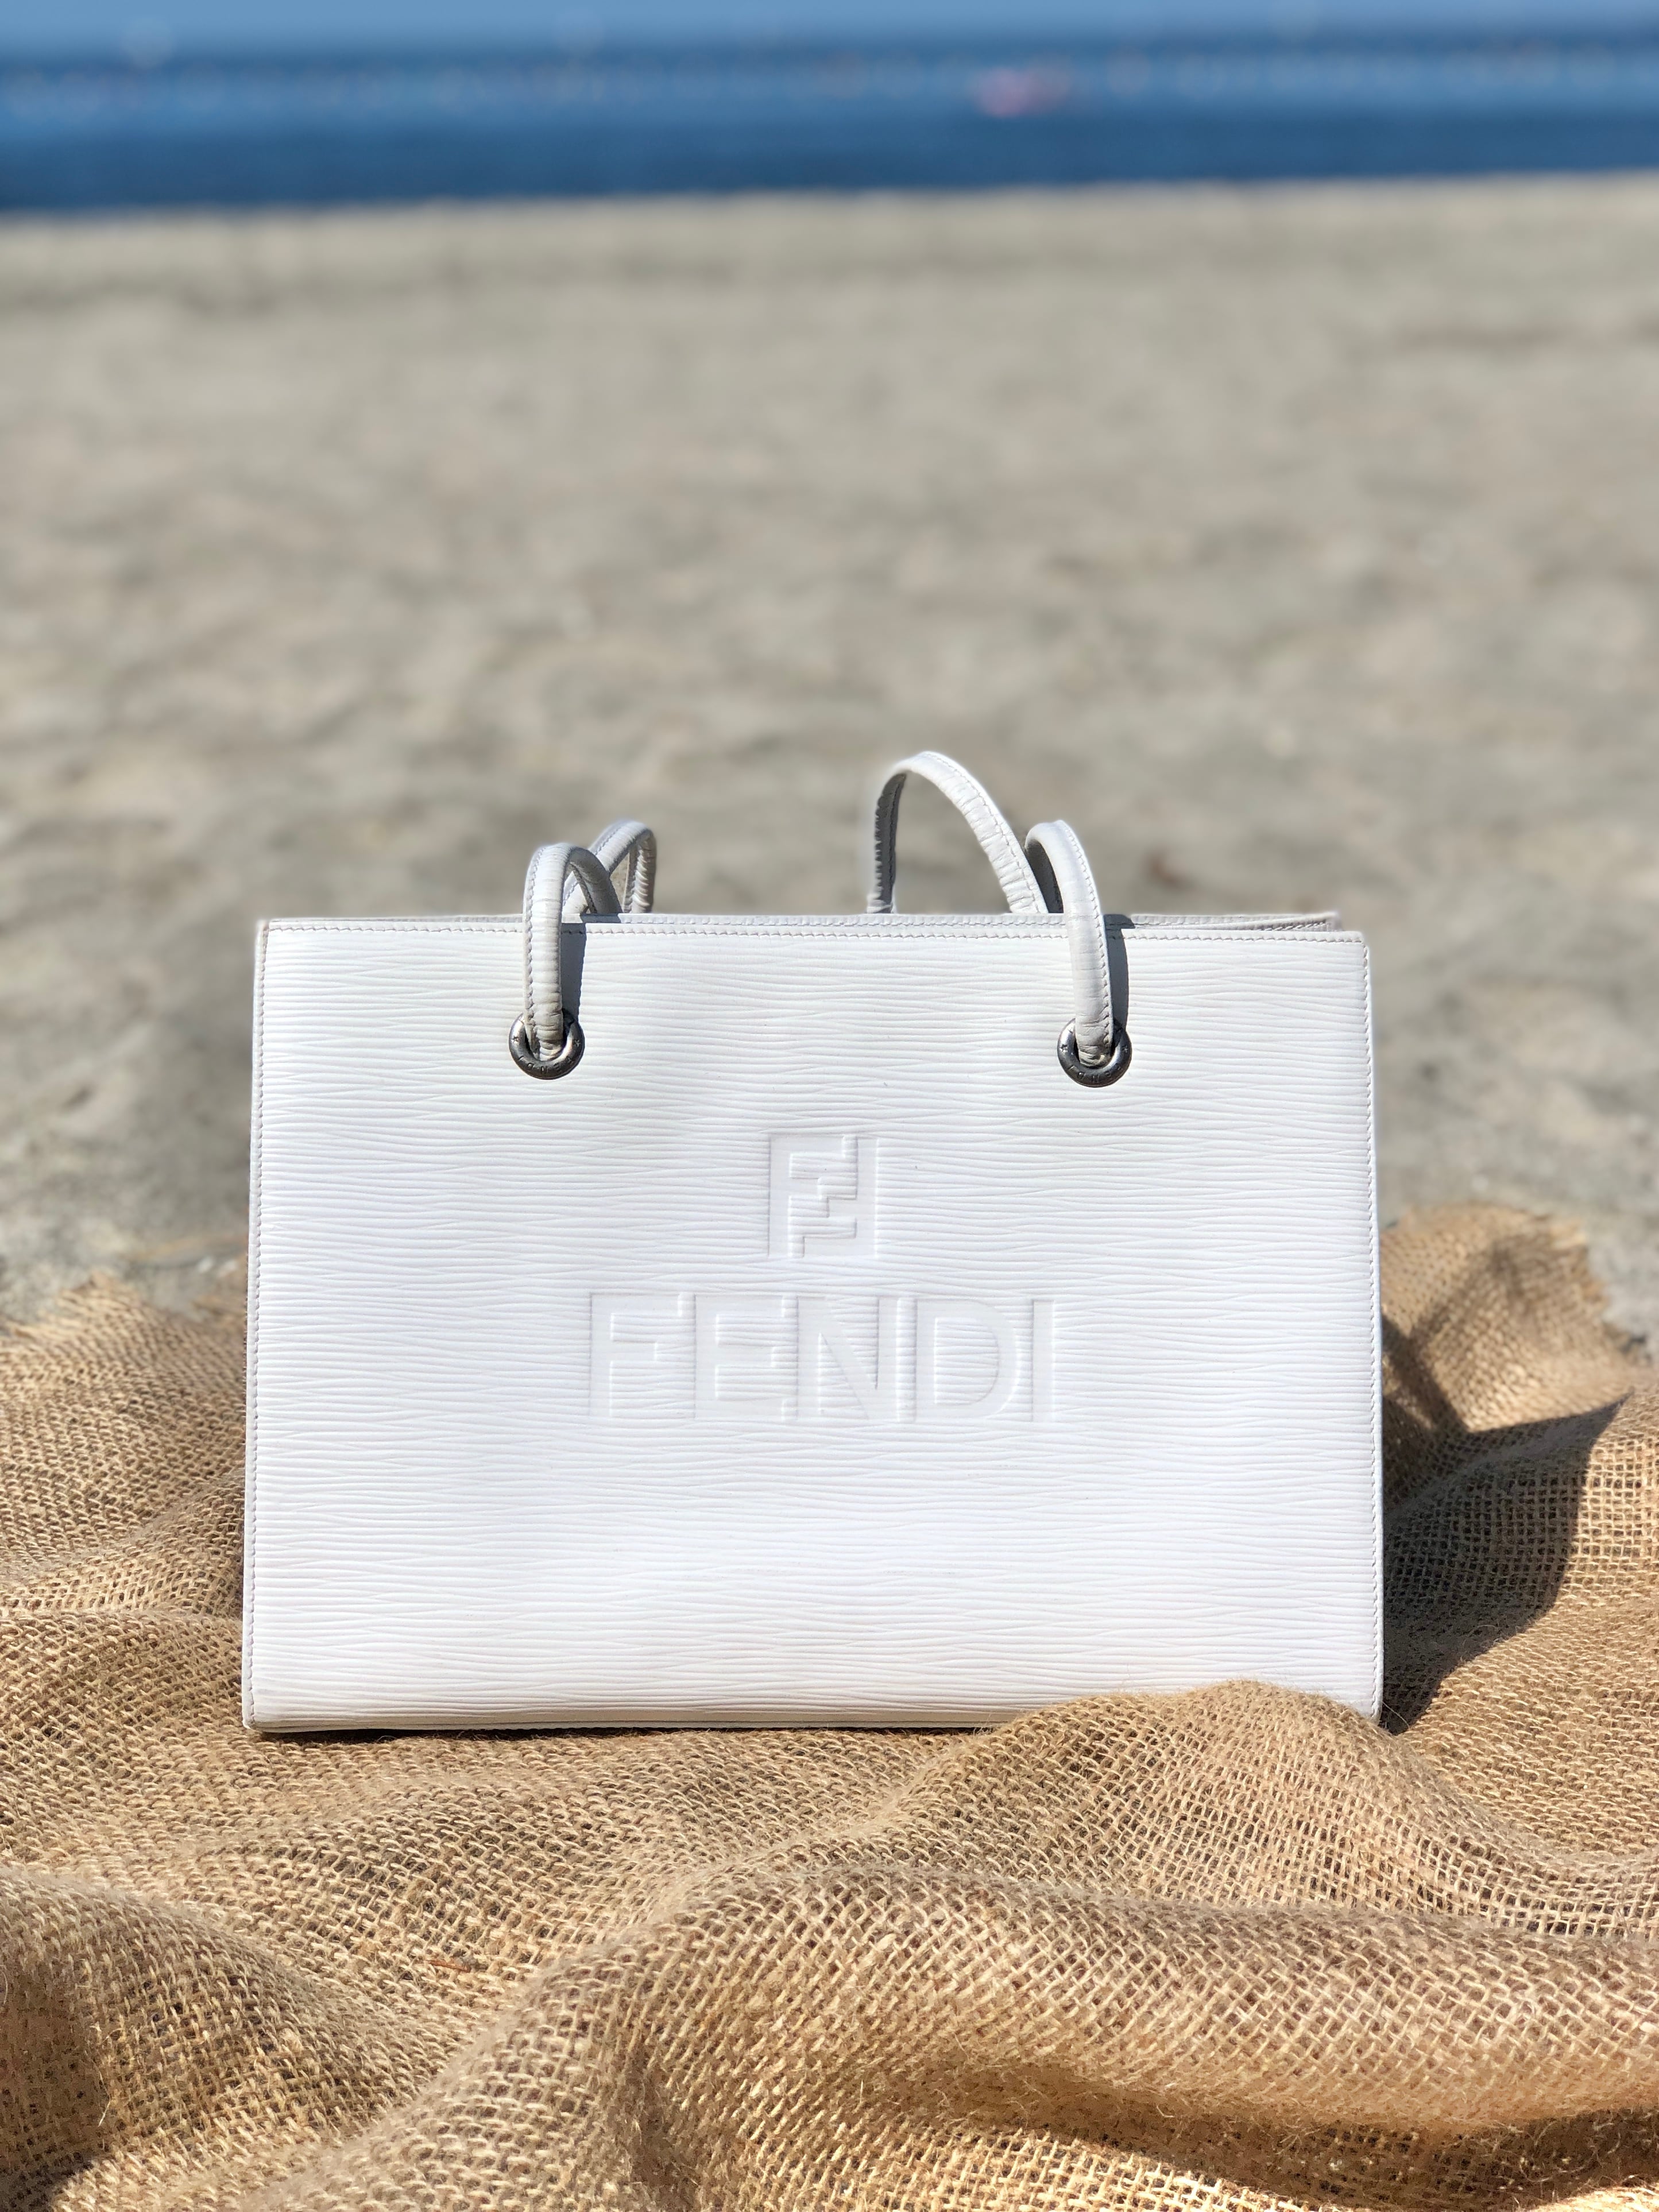 FENDI フェンディロゴデザインレザーショルダーバッグ